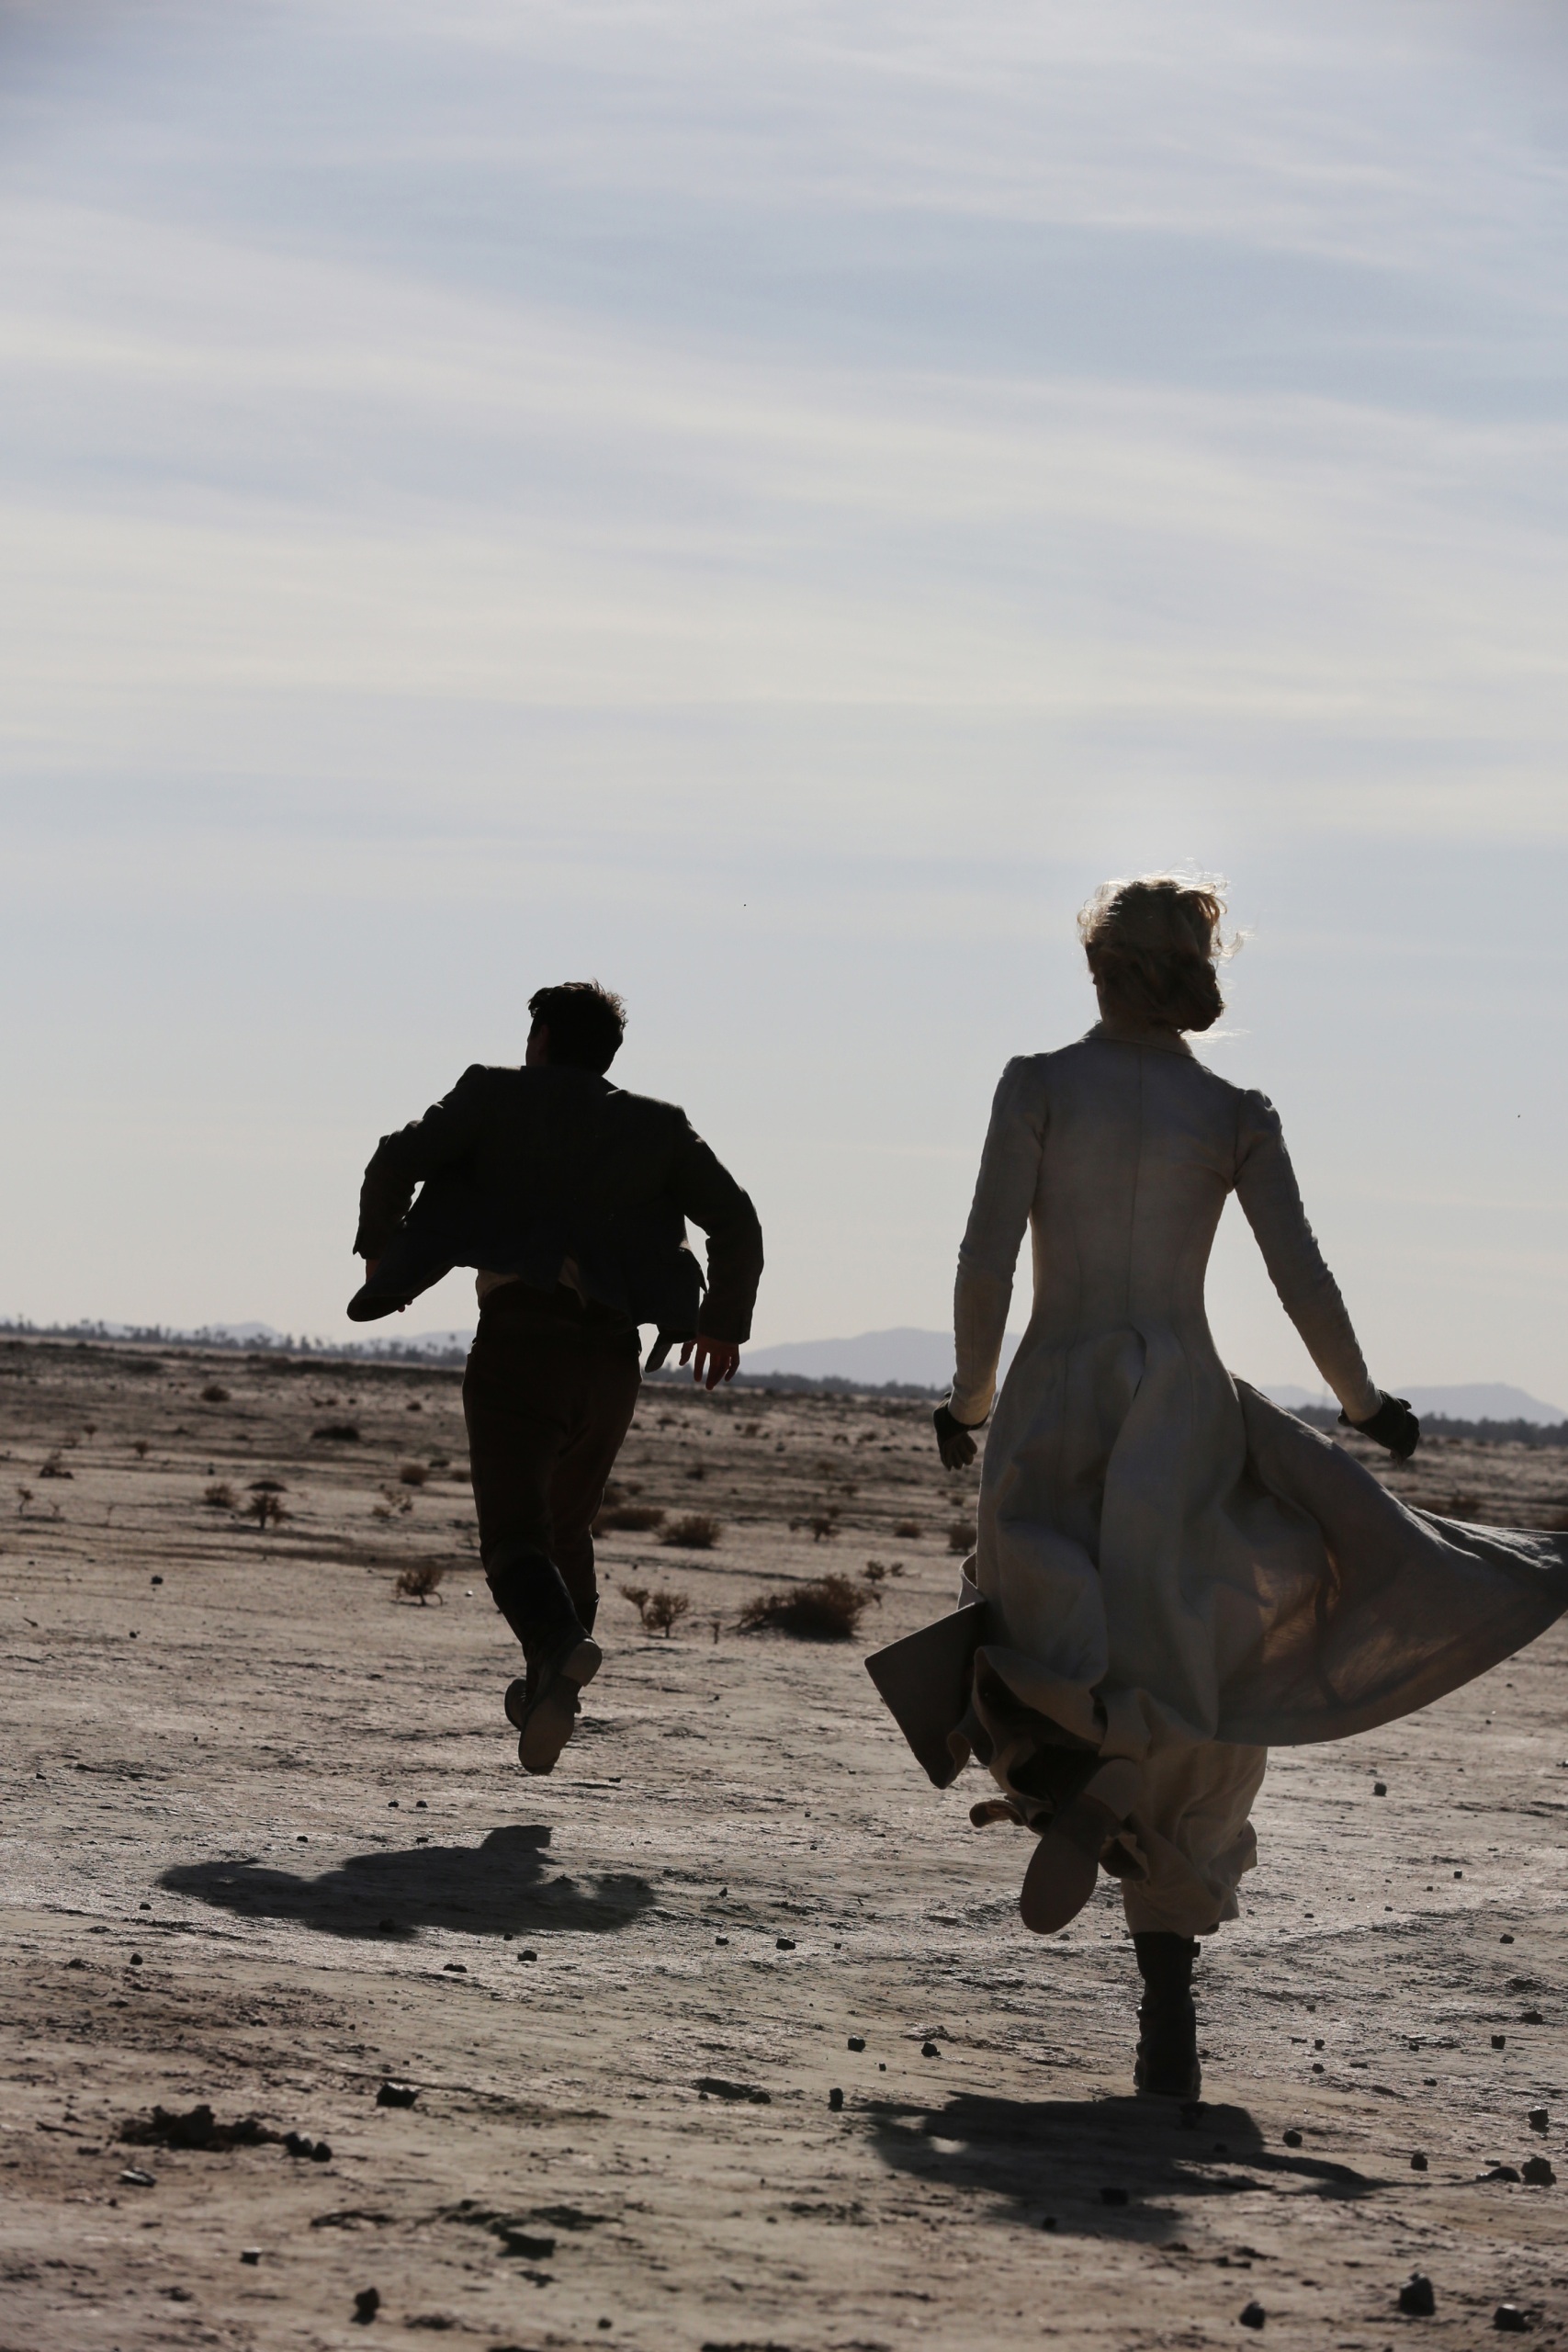 Ein Mann in Anzug und eine Frau in langem Kleid rennen durch die Wüste, weg von der Kamera. Die Sonne scheint intensiv und man kann nur die Umrisse der Personen ausmachen. 